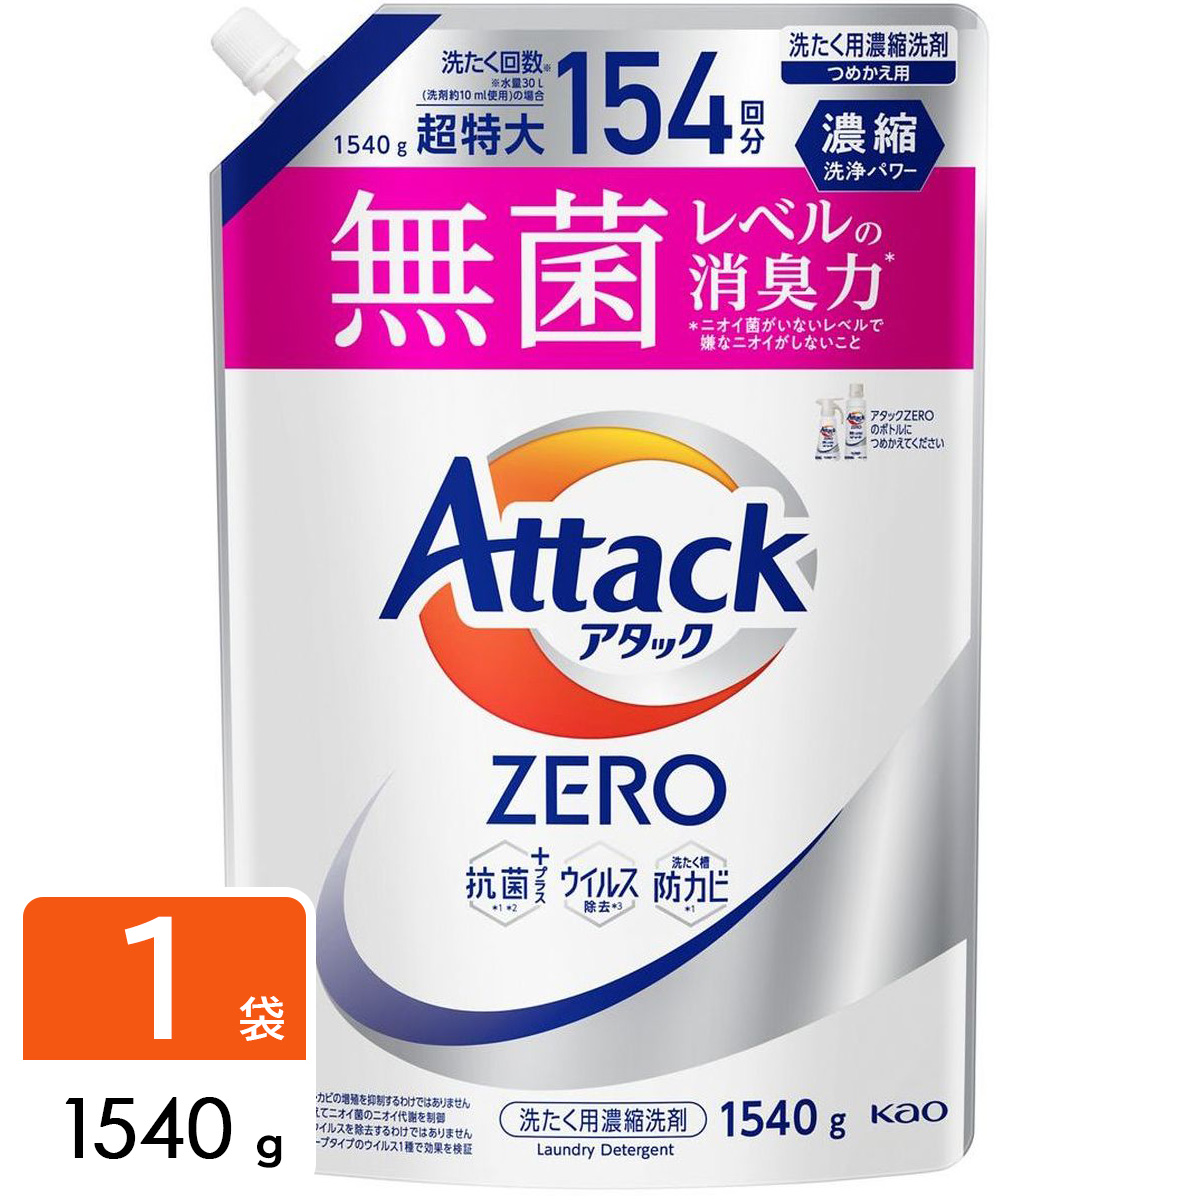 アタックZERO Attack ZERO 洗濯洗剤 詰め替え用 1540g